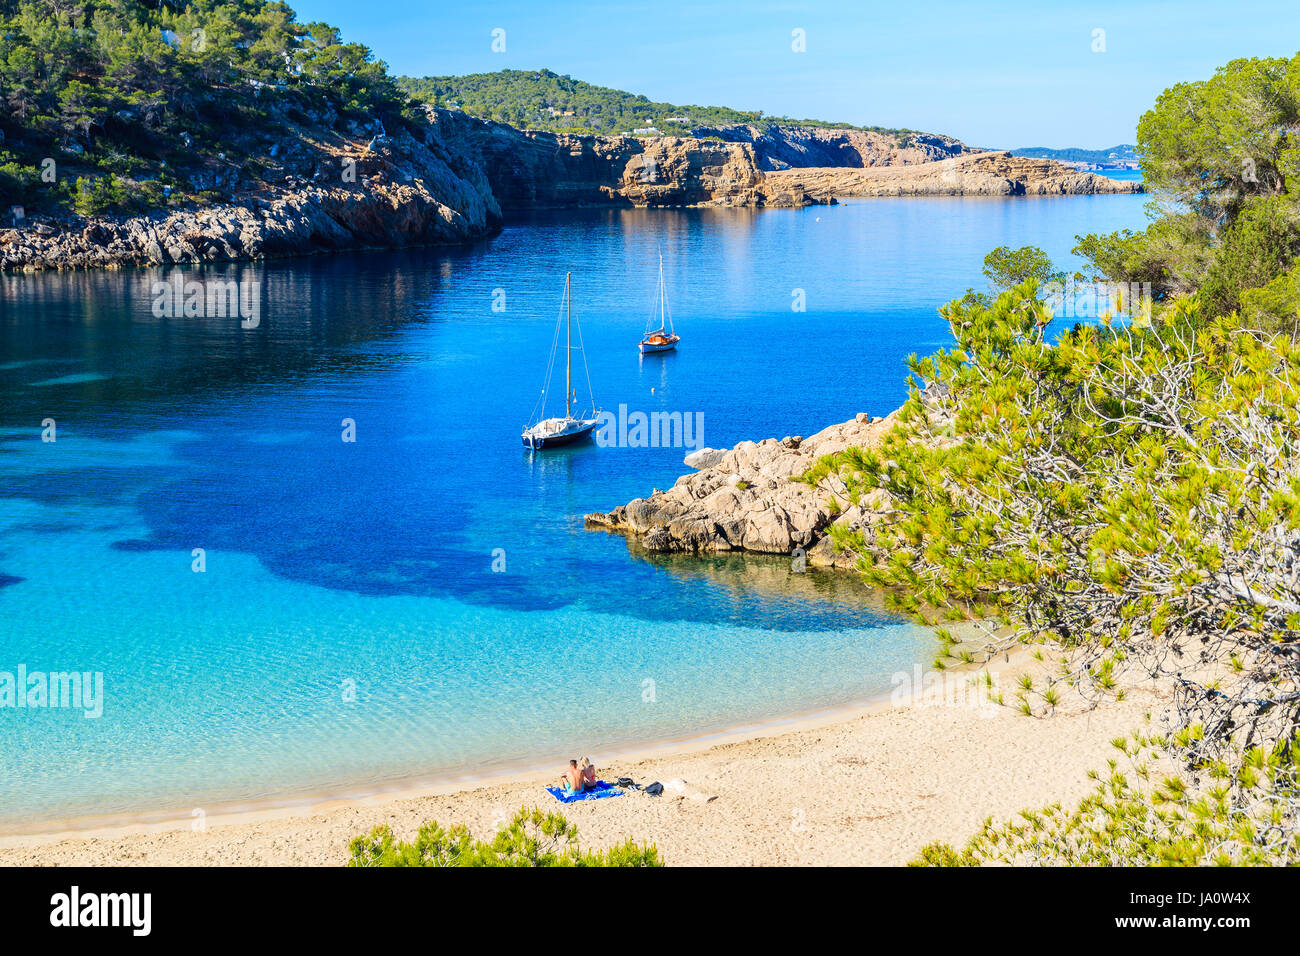 Paar Unidentifed Leute Sonnenbaden am schönen Strand von Cala Salada berühmt für seine Azure kristallklares Meerwasser, Insel Ibiza, Spanien Stockfoto